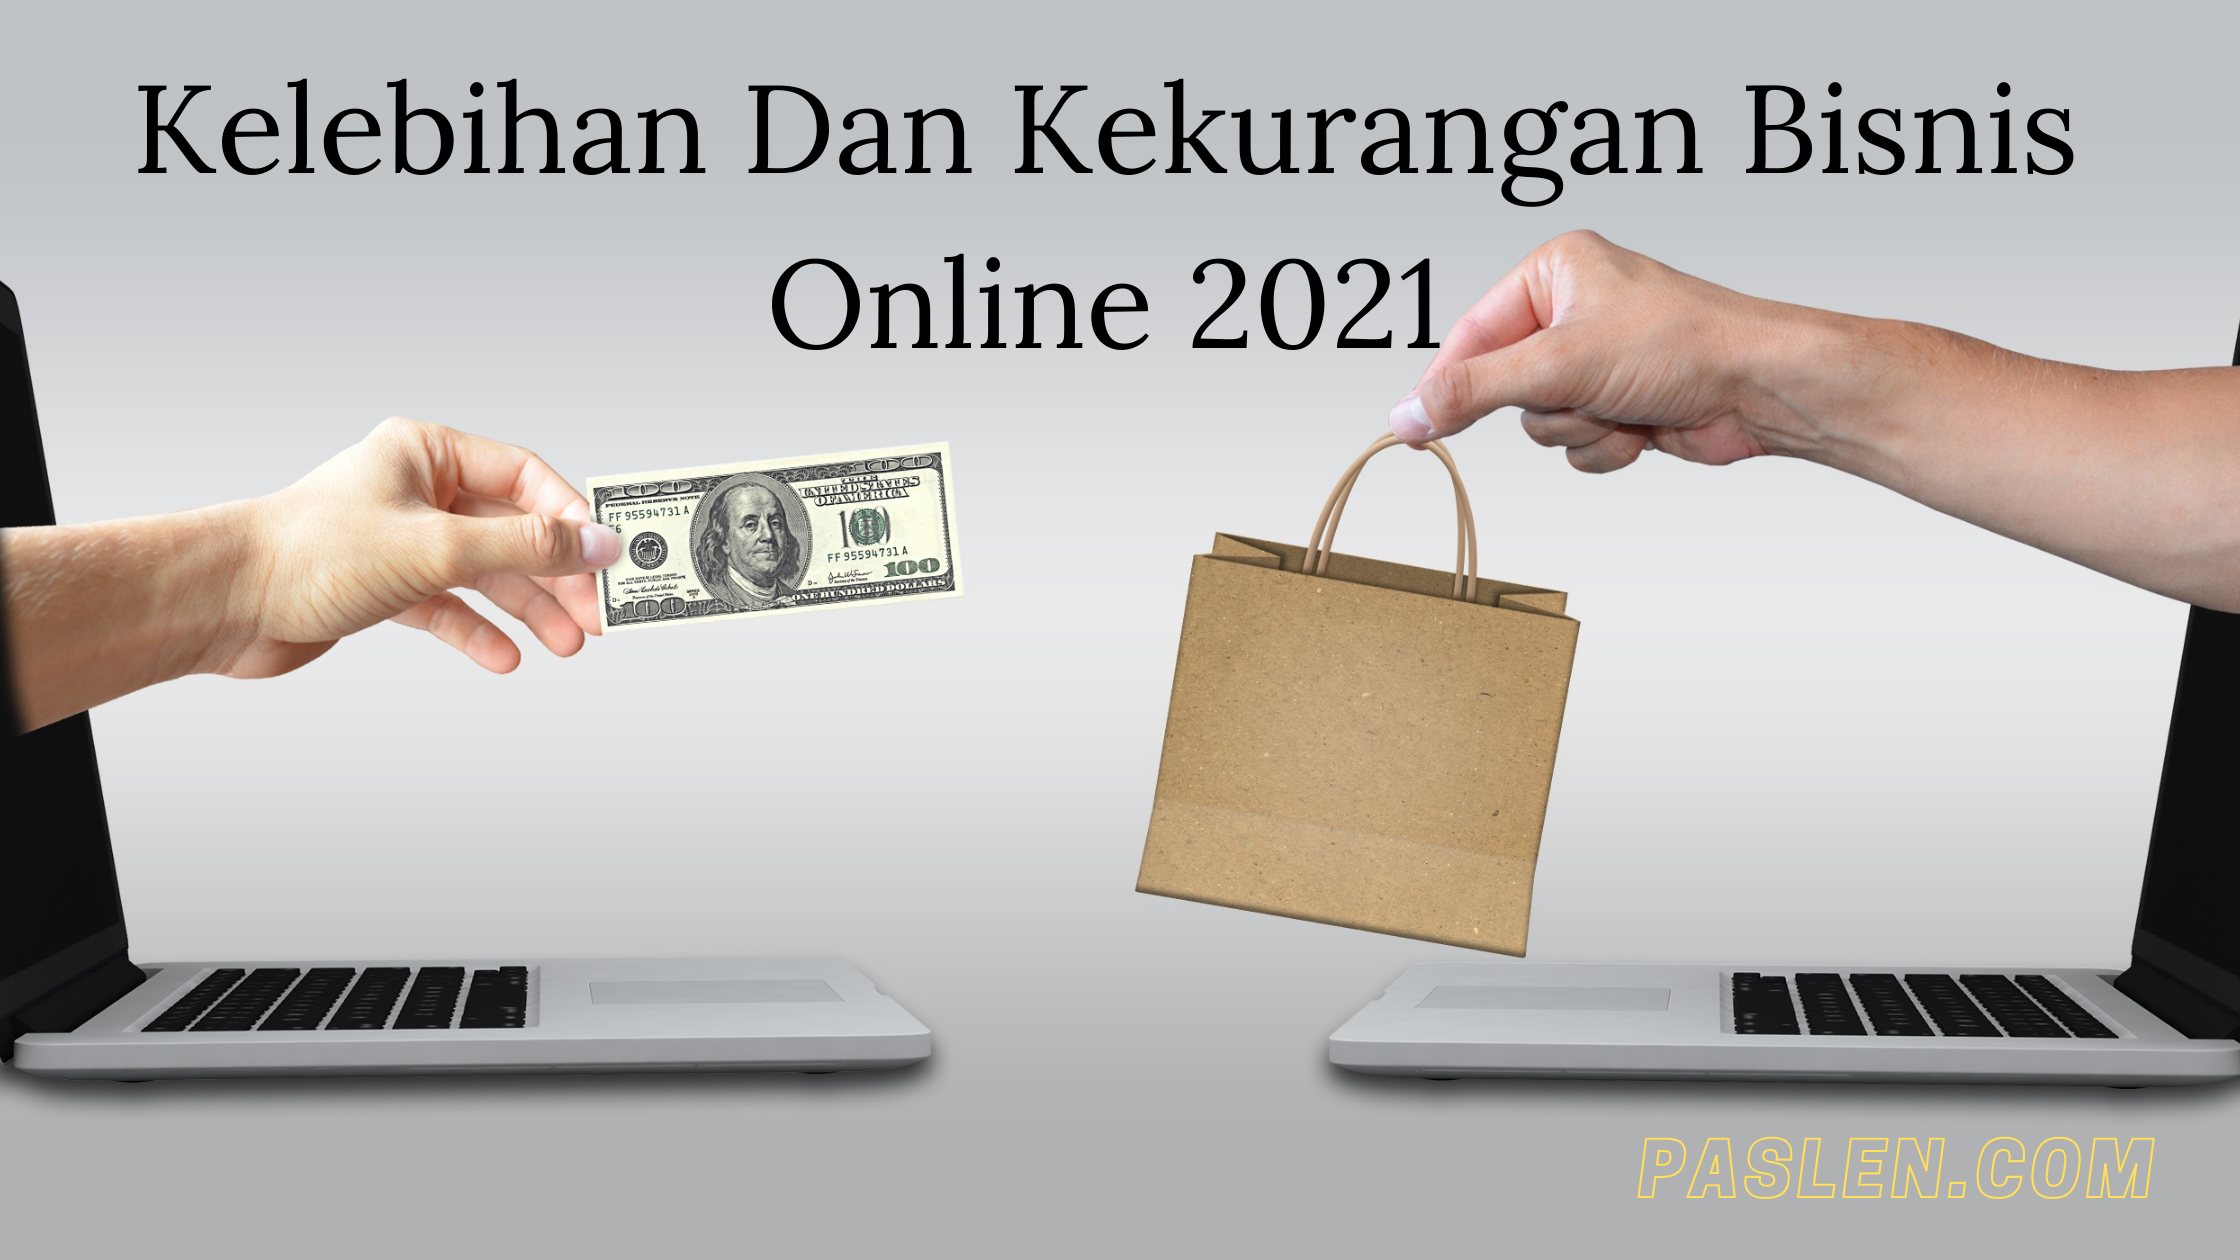 Kelebihan Dan Kekurangan Bisnis Online 2021